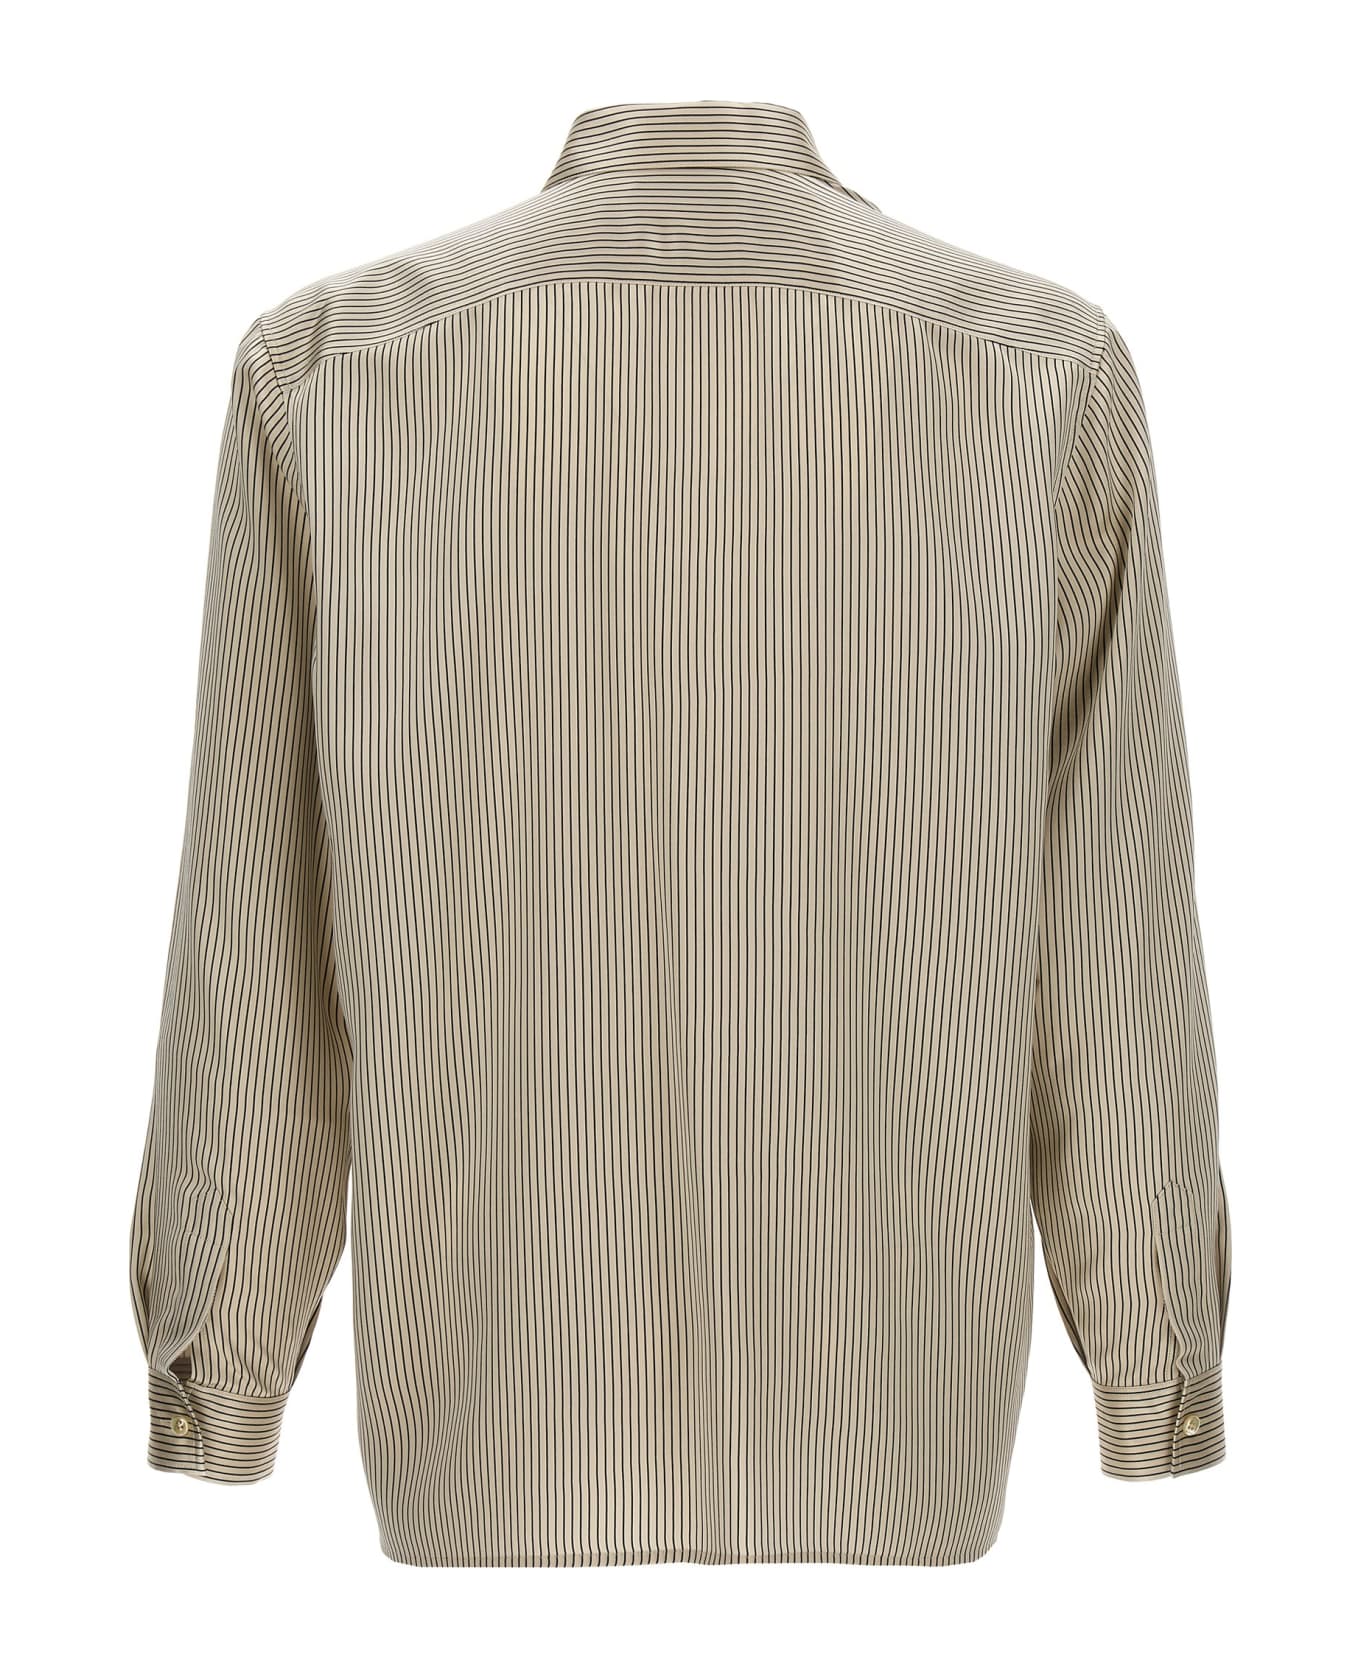 Saint Laurent 'satin' Striped Shirt - White/Black シャツ